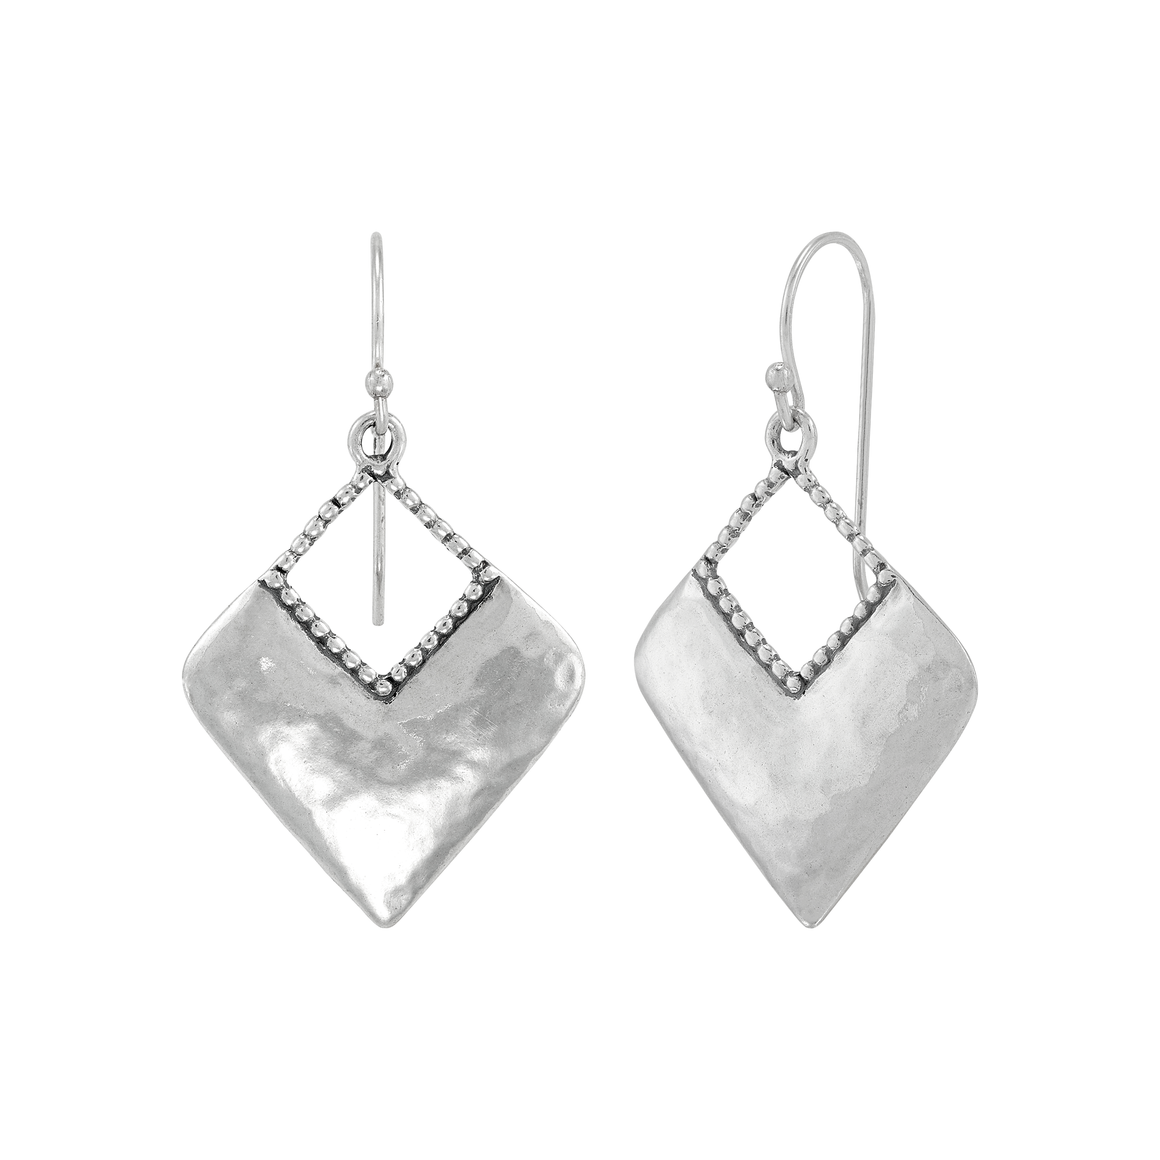 Silpada 'Kite' Sterling Silver Drop Earrings